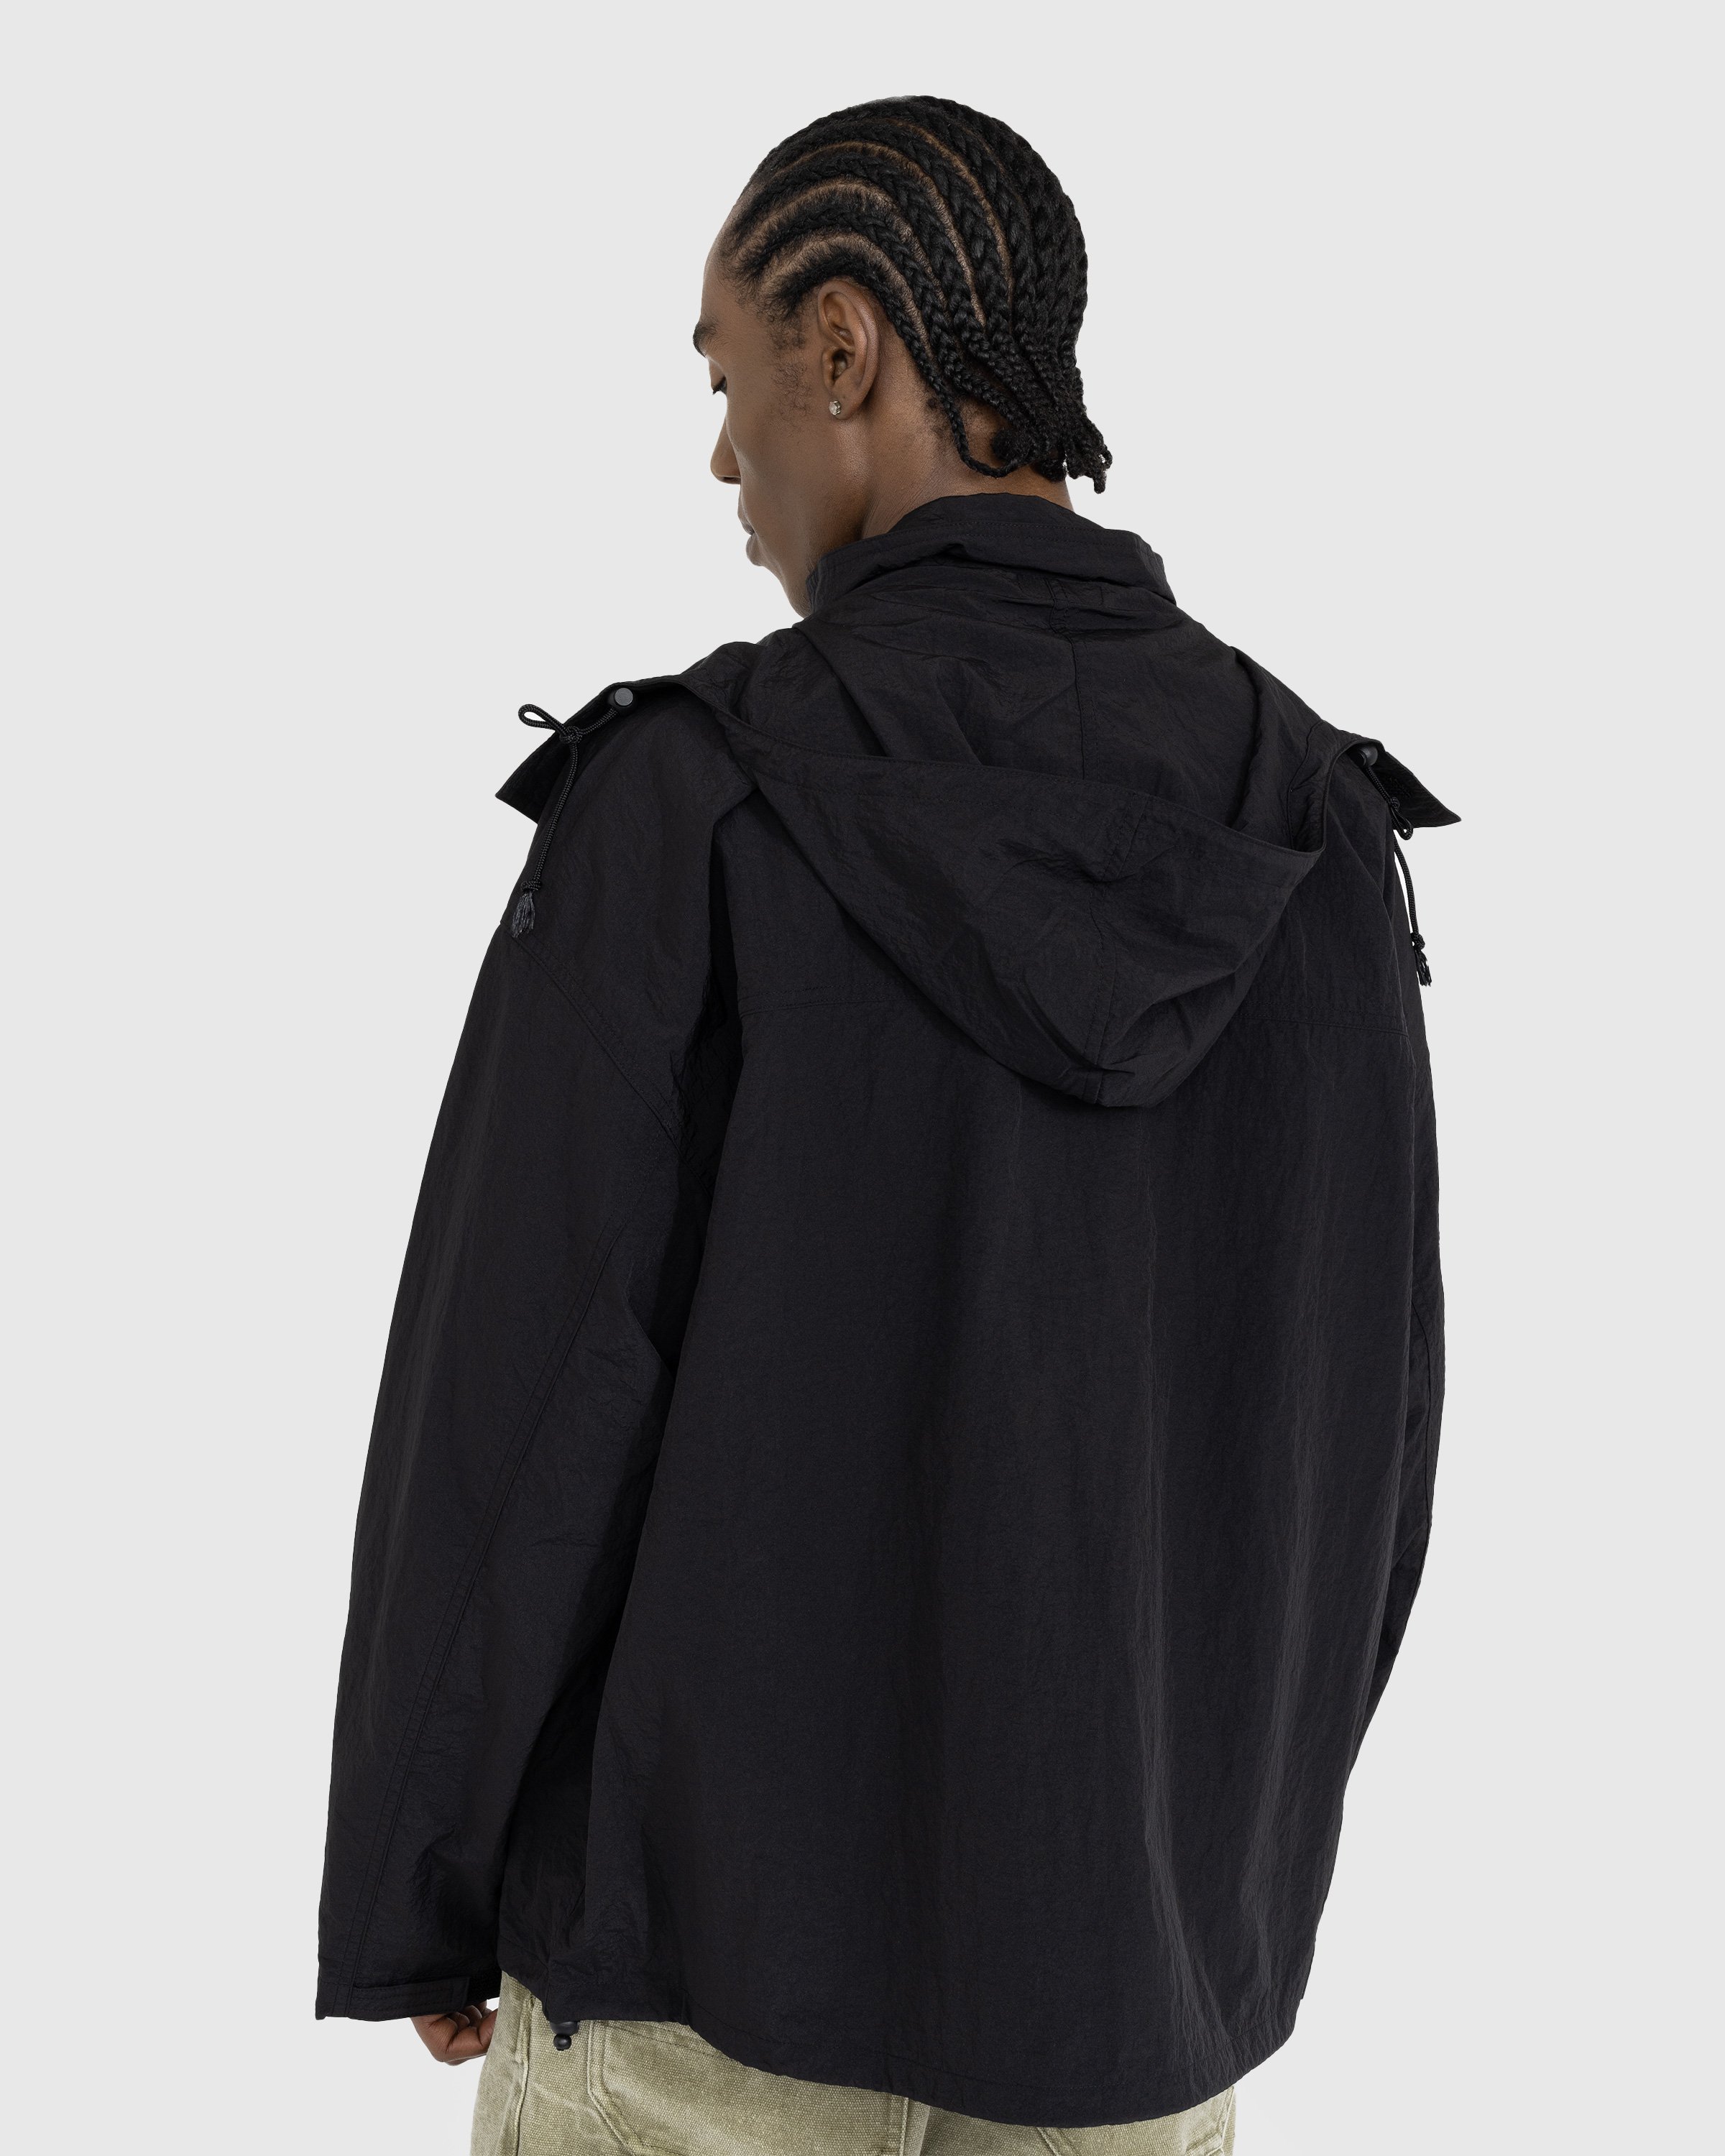 Acne Studios - Nylon Hooded Jacket Black - Clothing - Black - Image 3